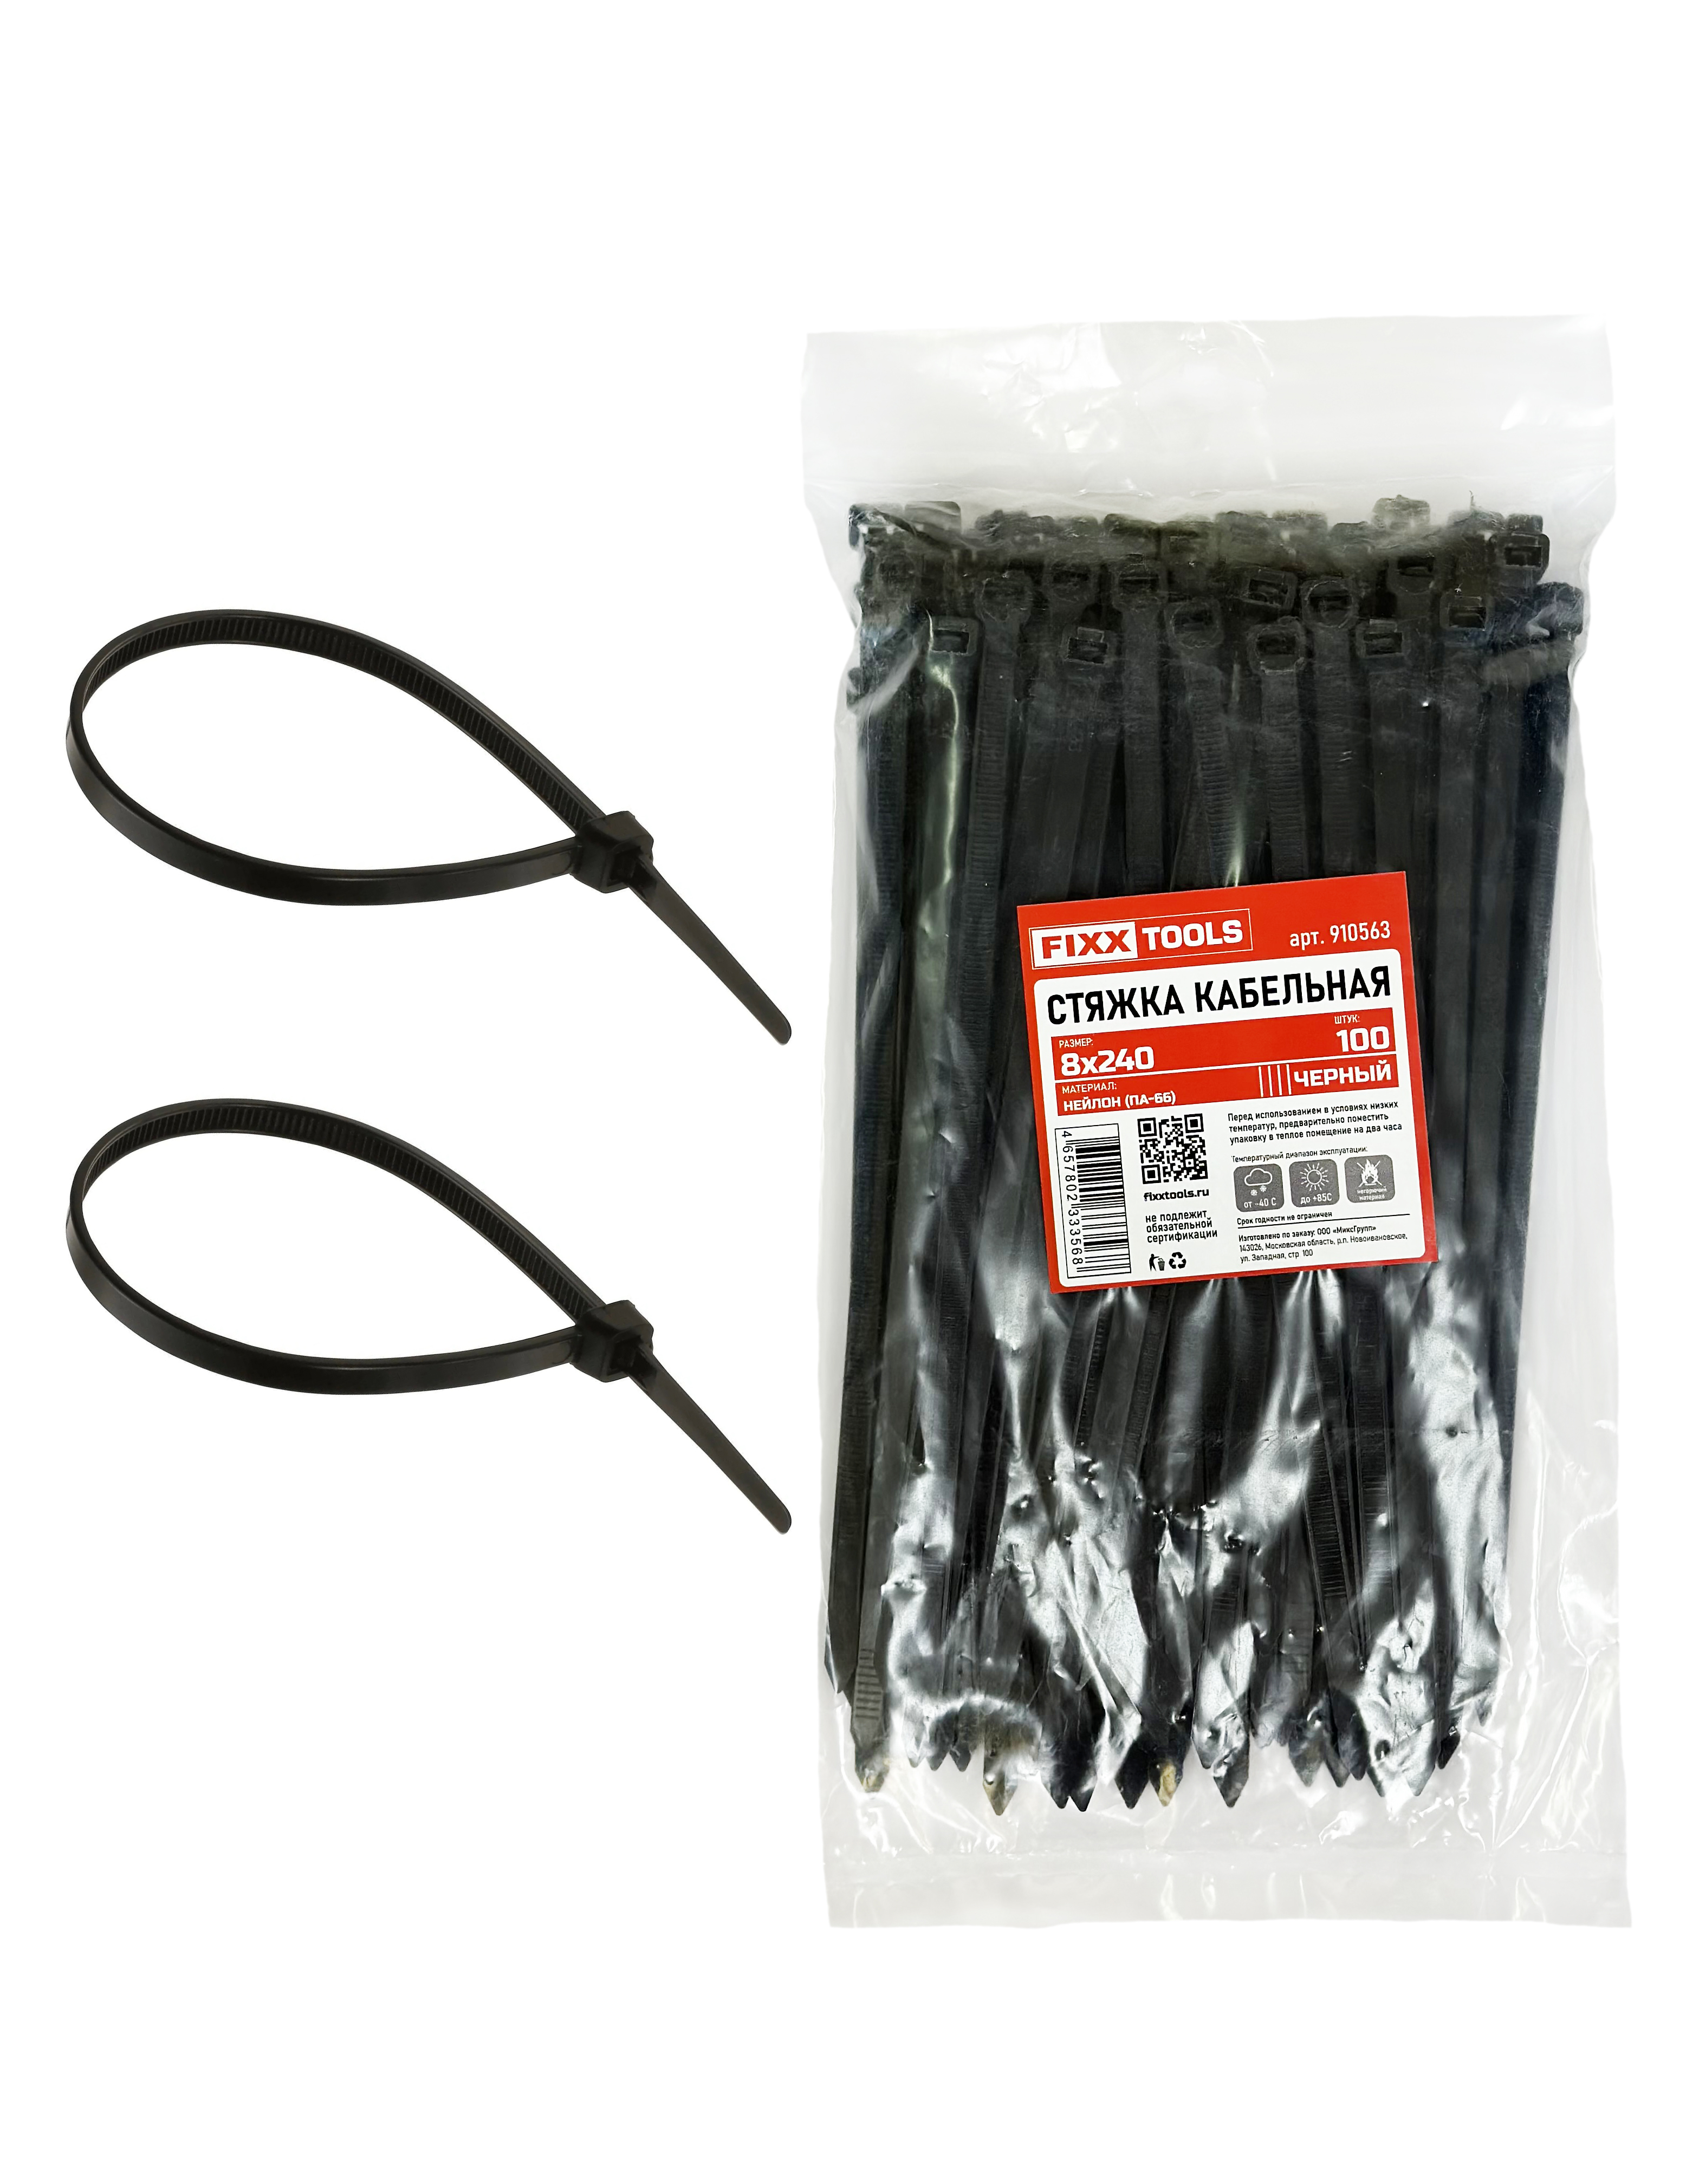 Стяжка кабельная FIXXTOOLS 8х240мм черная упак 100шт 910563 кабельная стальная хомут стяжка червячная с ключом rexant w 10 16 мм упаковка 50 шт 07 0610 1